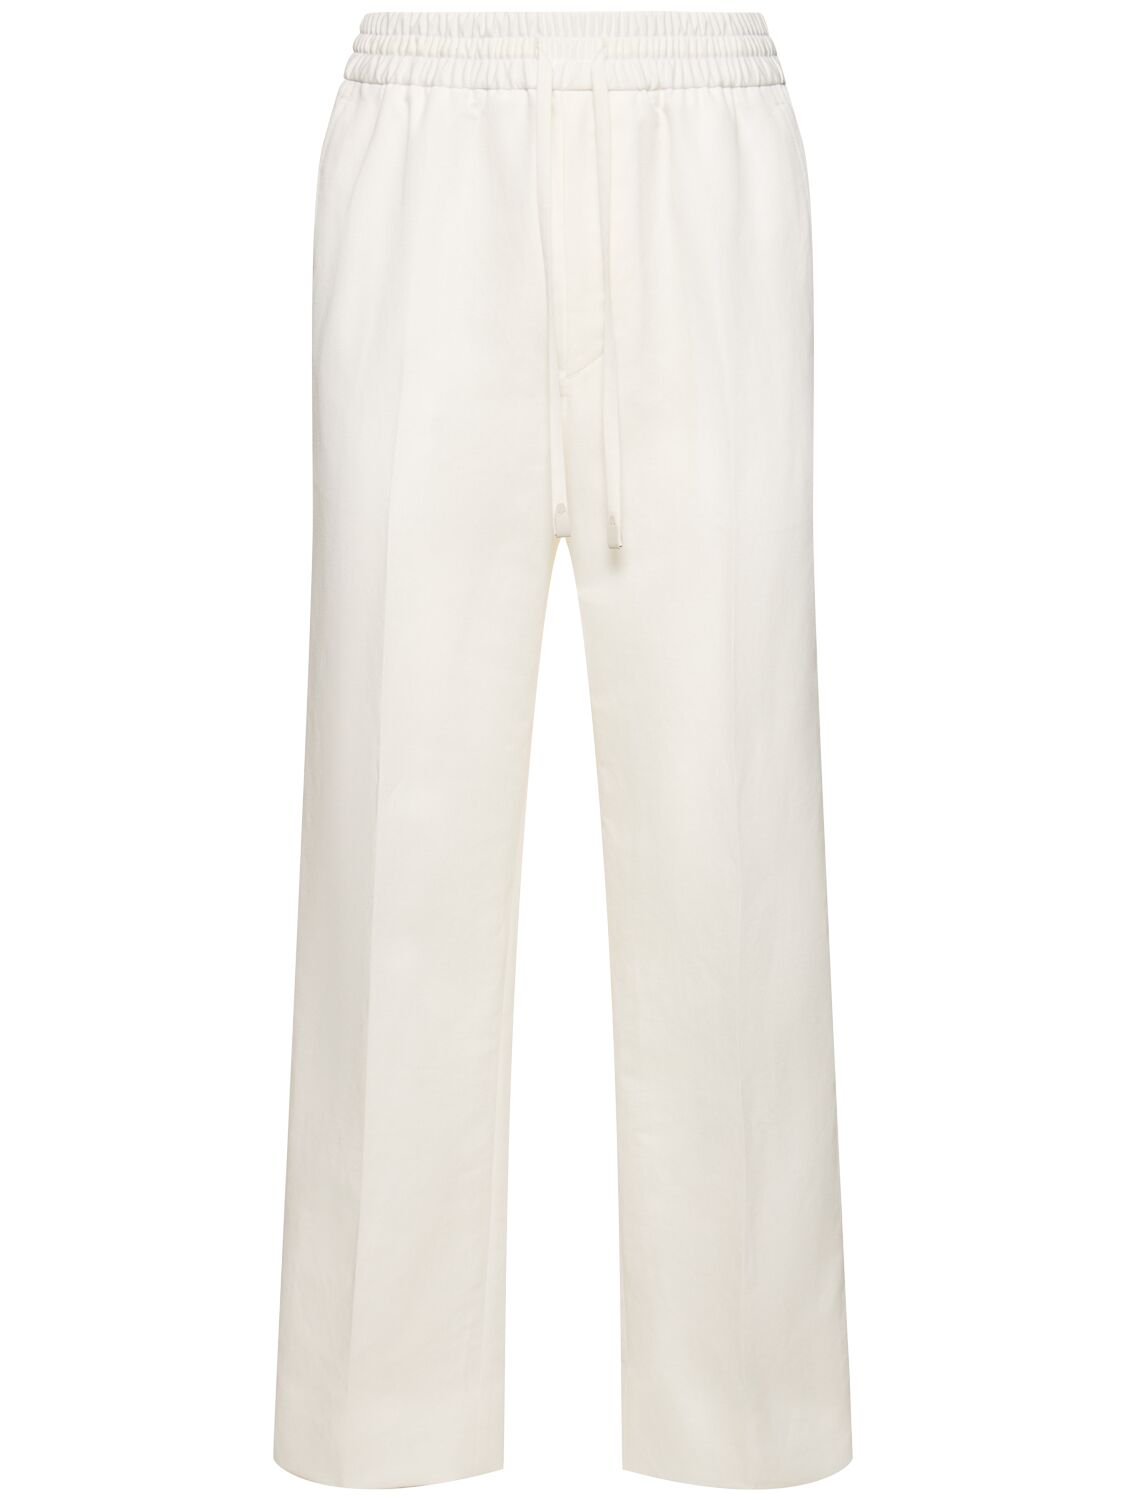 Brioni Asolo Cotton & Linen Sweatpants In Off White